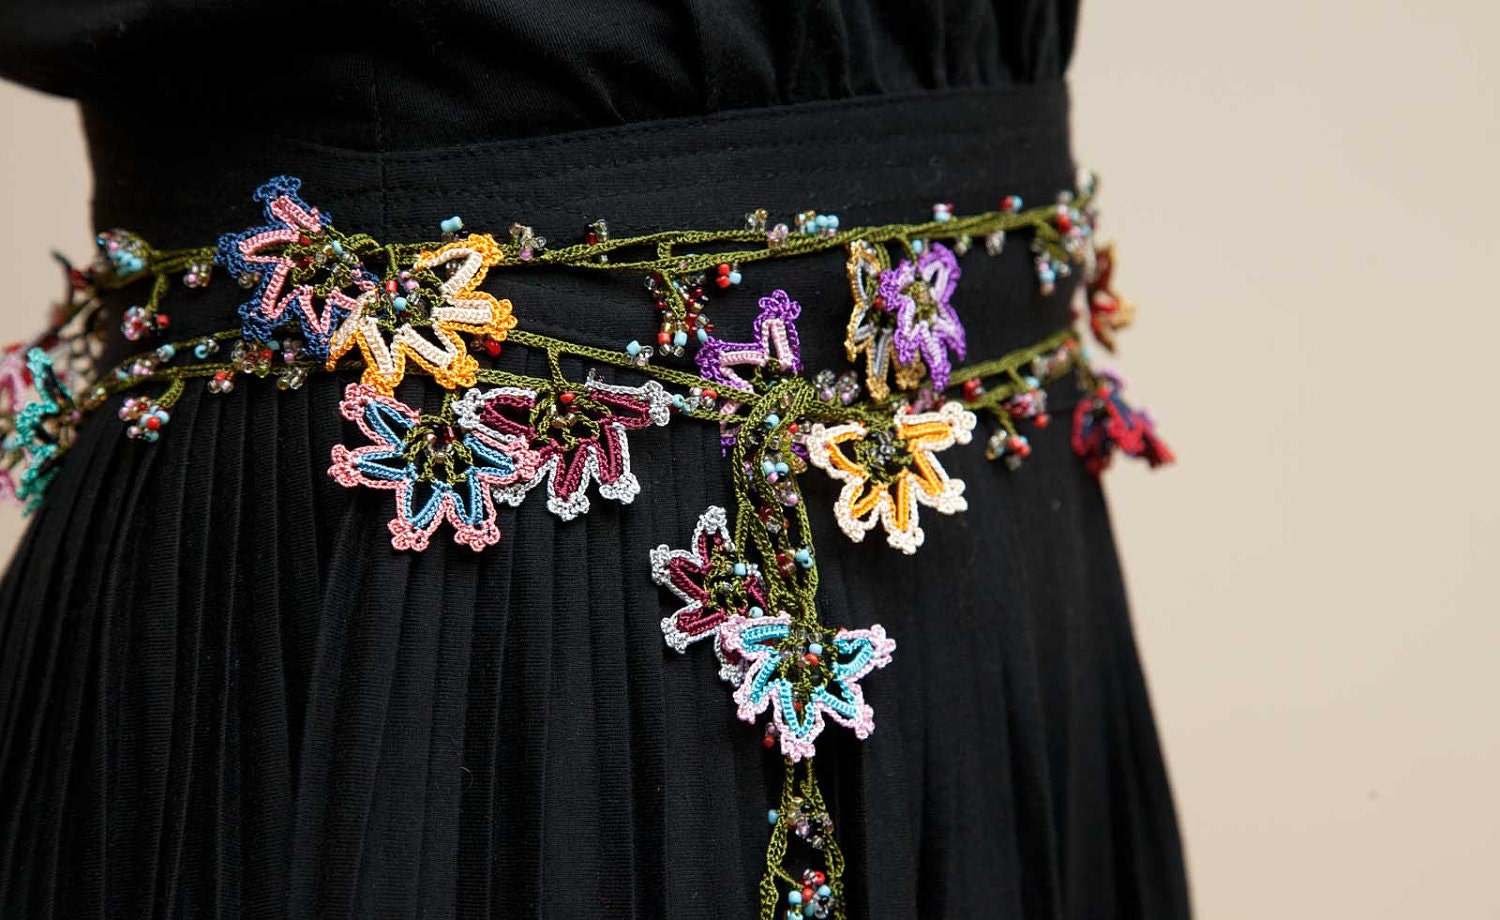 turkish lace - needle lace - oya necklace - FREE SHIPMENT - 006-06